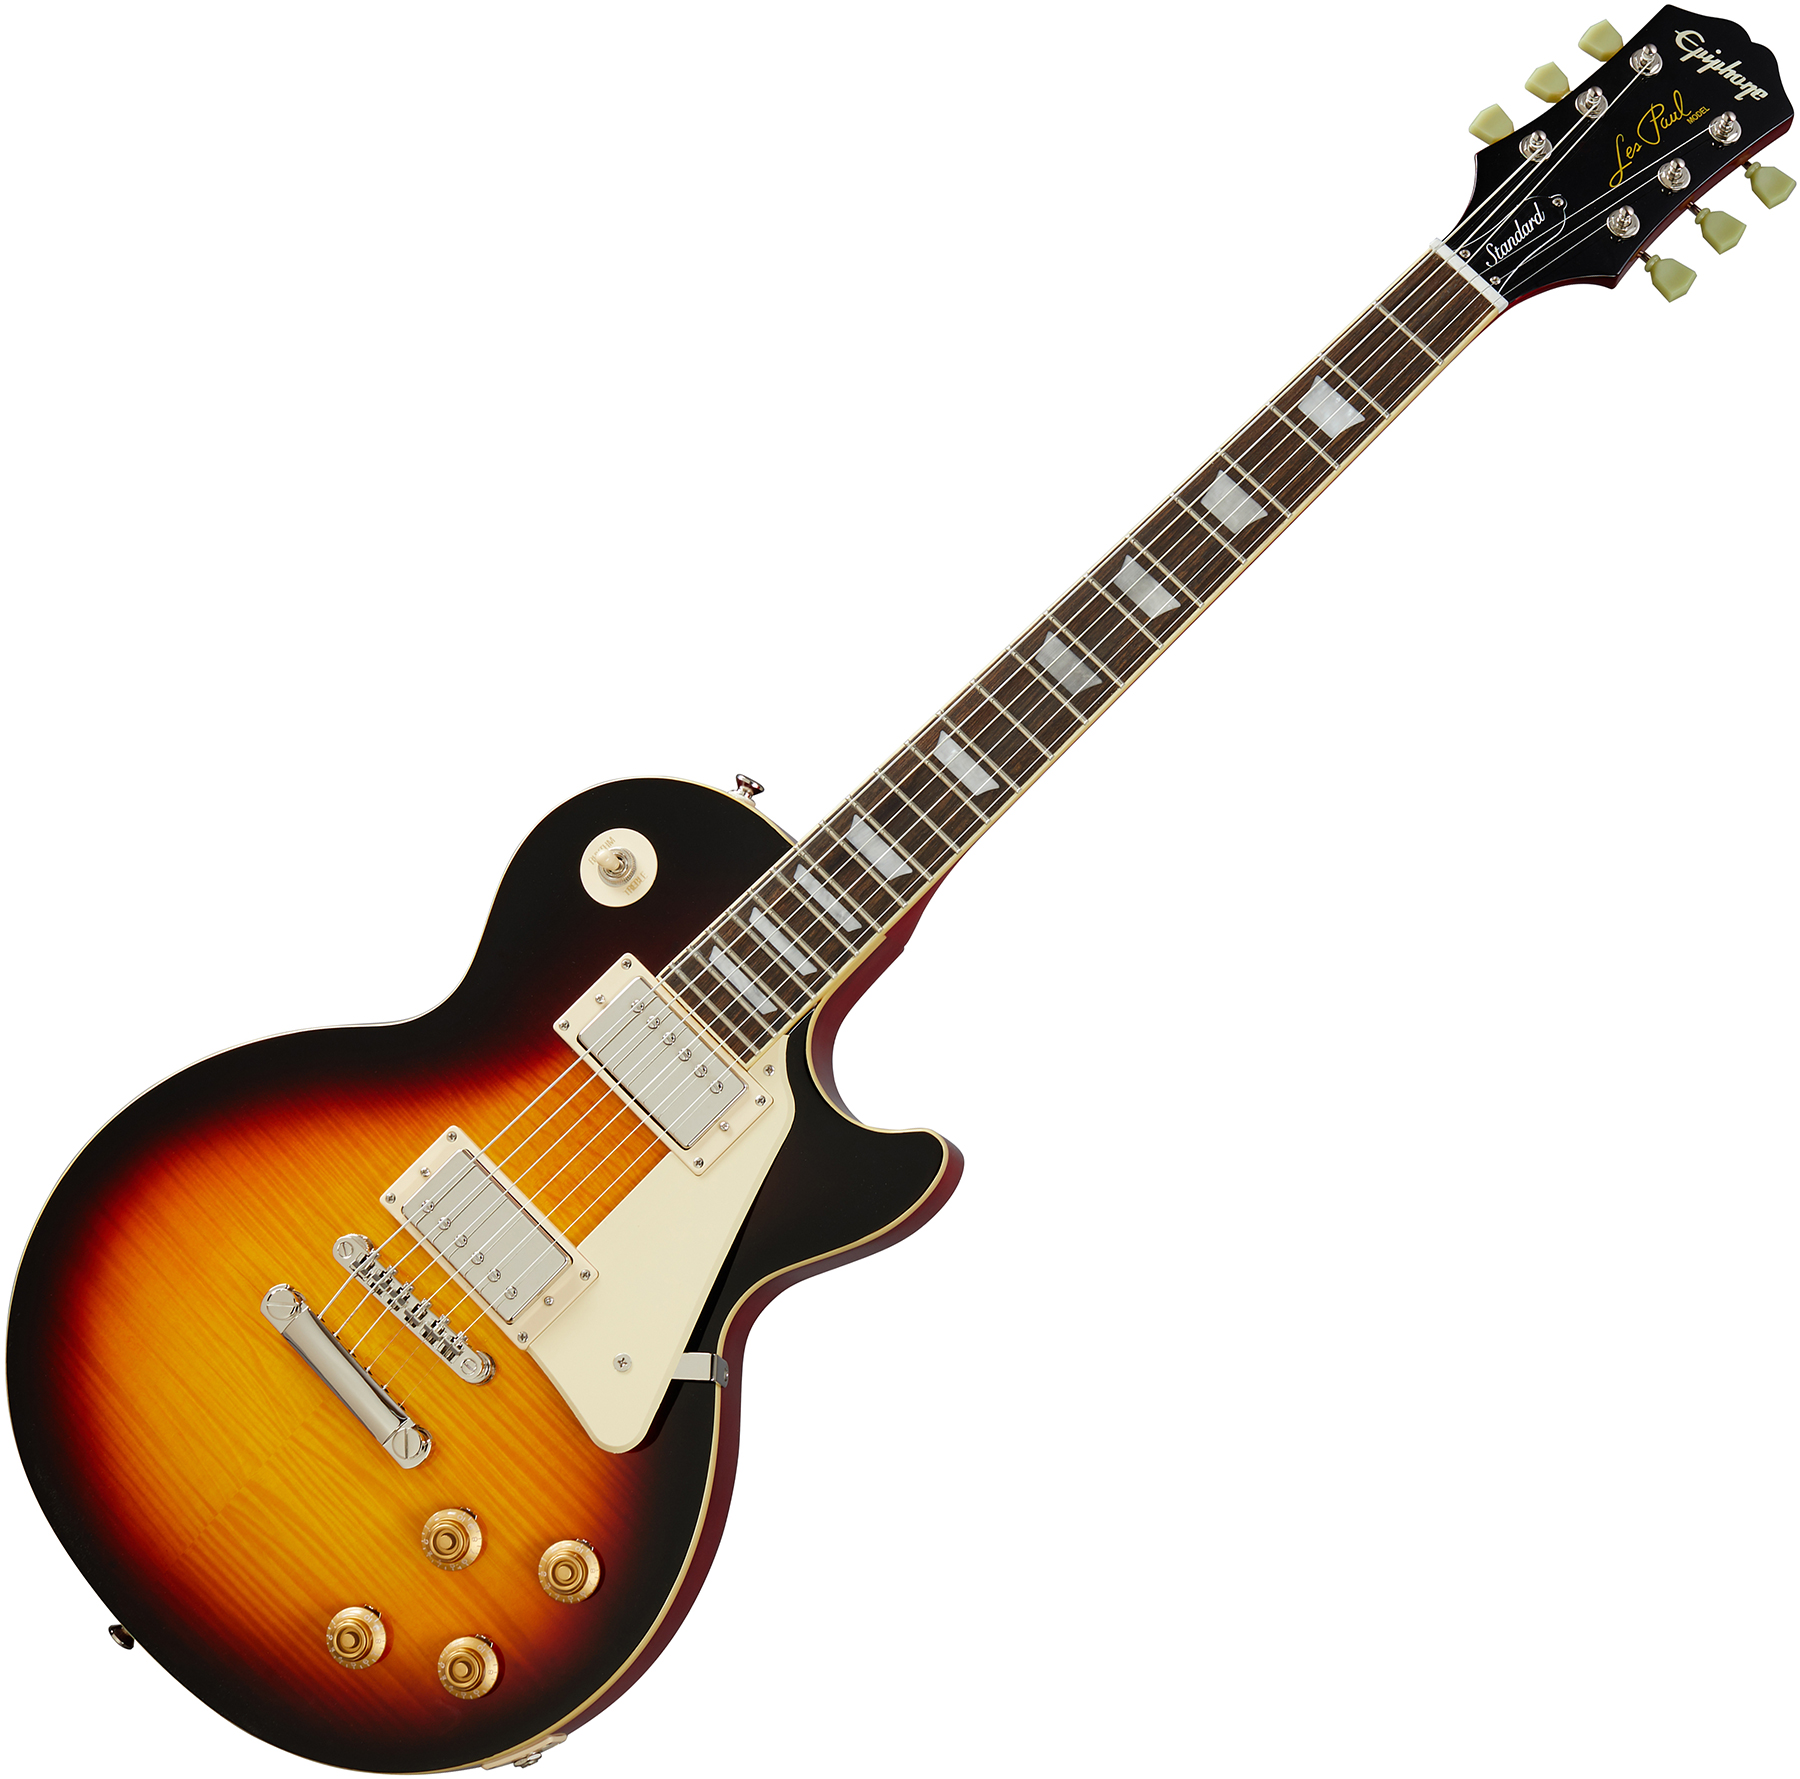 Epiphone Les Paul Standard 50s 2h Ht Rw - Vintage Sunburst - Guitarra eléctrica de corte único. - Variation 1